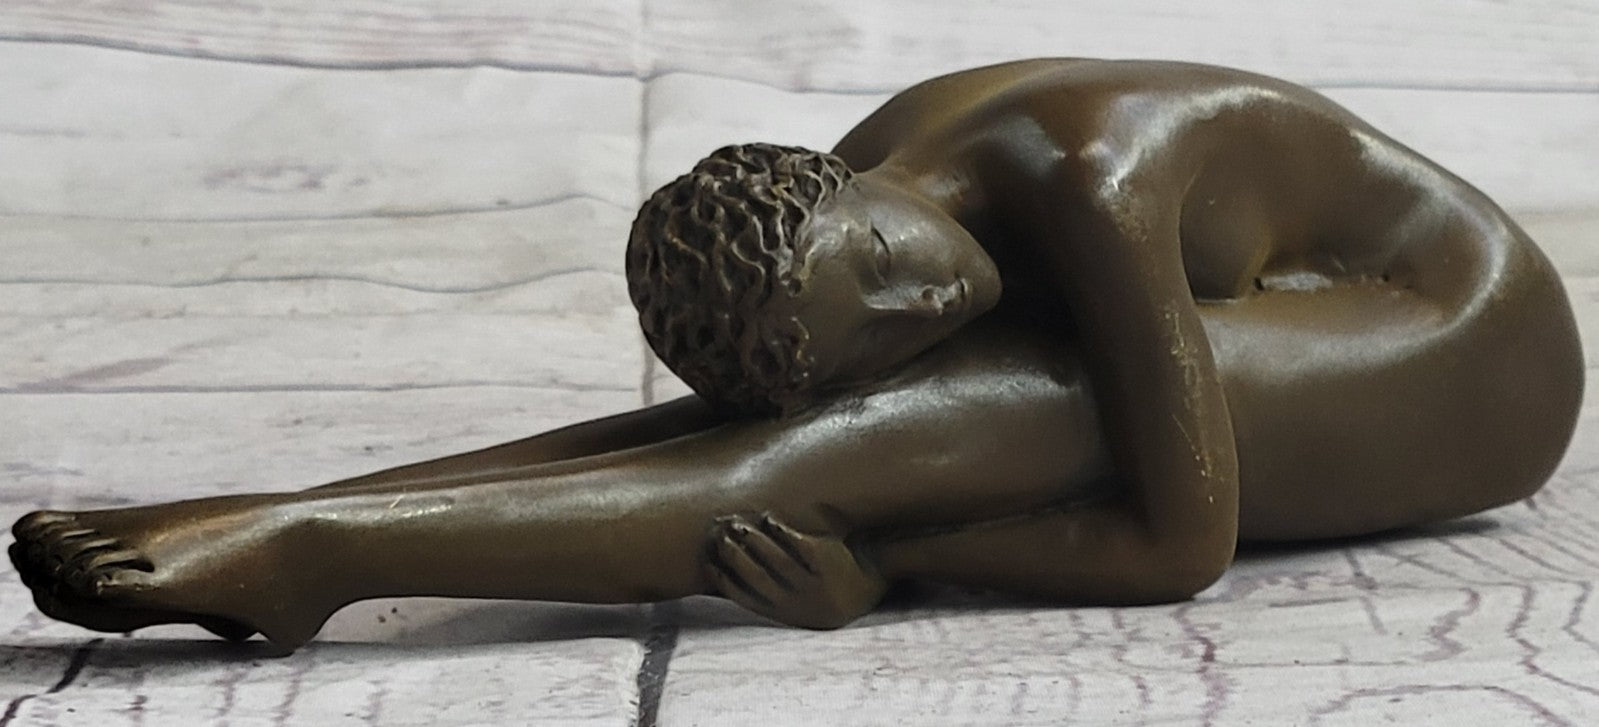 Classical Lean Woman Yoga Bronze Sculpture Vintage Art Lady Figurine Statue Retro